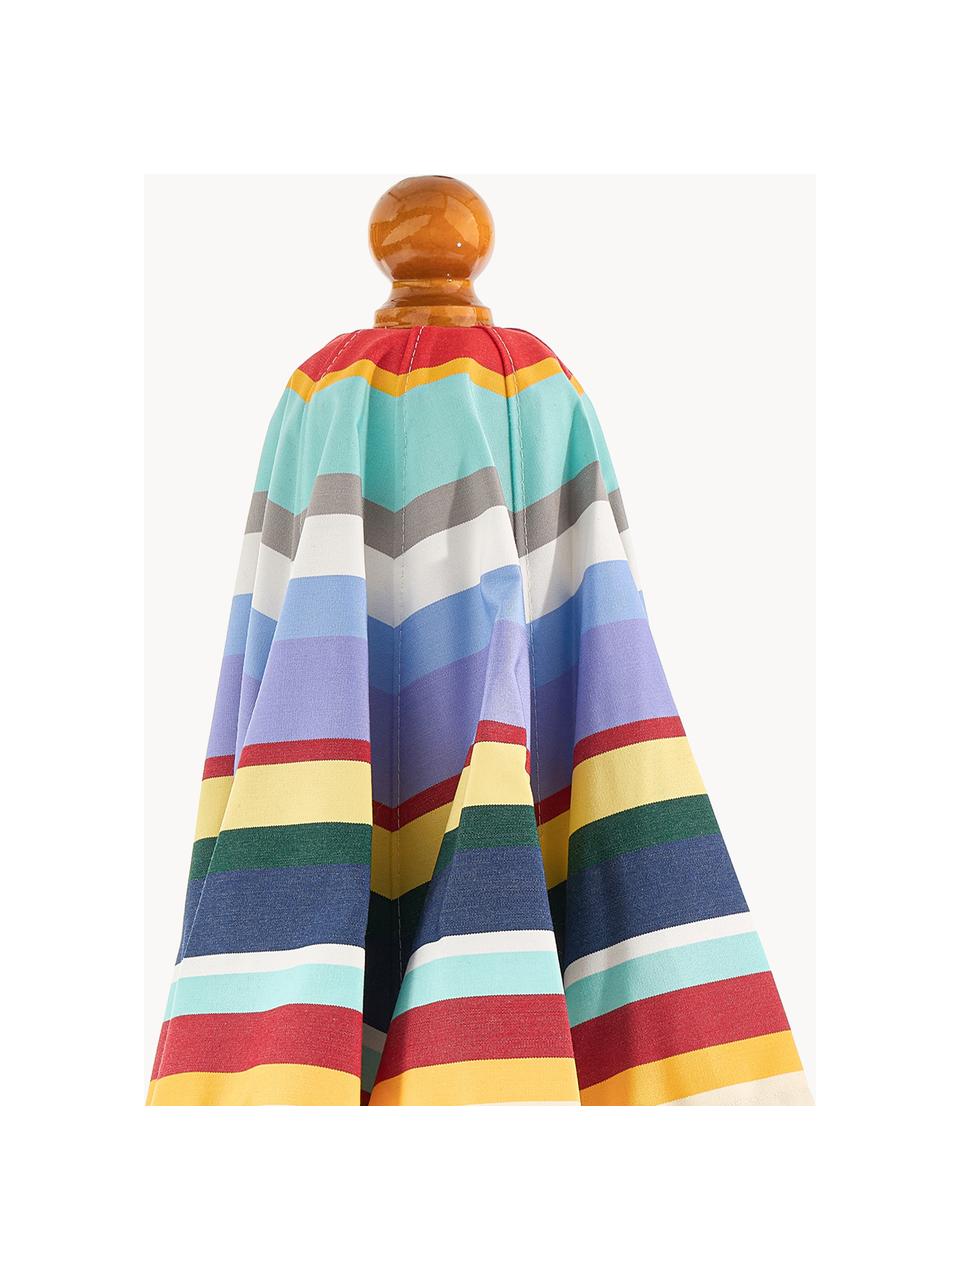 Parasol rond Classic, tailles variées, Multicolore, bois clair, Ø 210 x haut. 251 cm